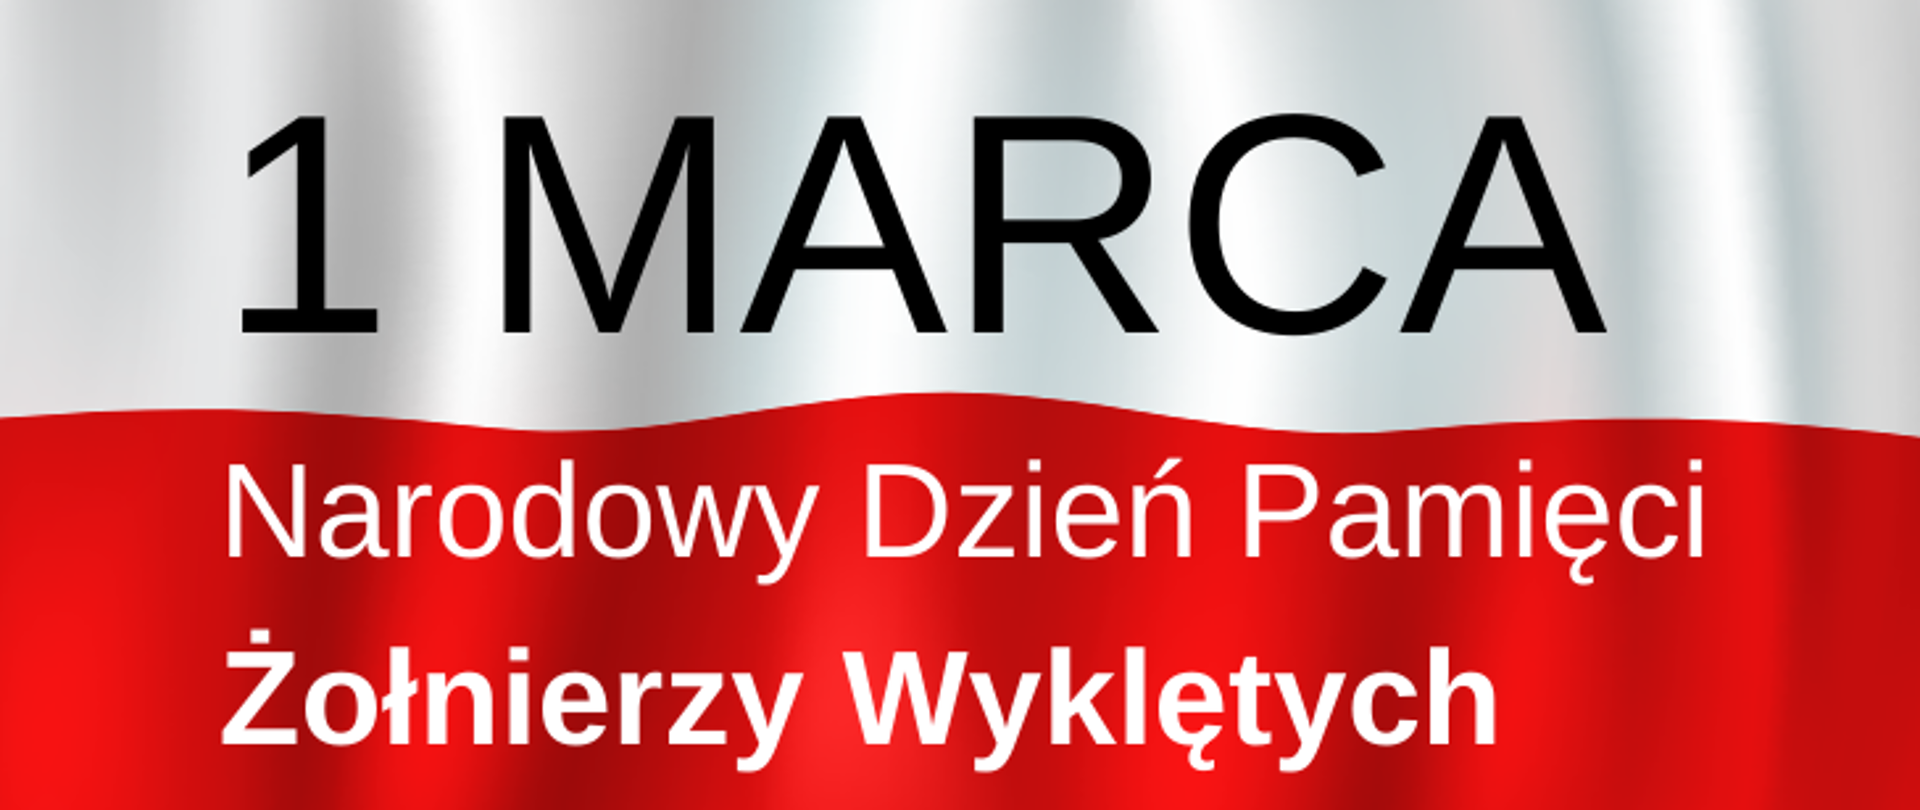 banner z napisem - 1 marca Narodowy Dzień Pamięci
Żołnierzy Wyklętych